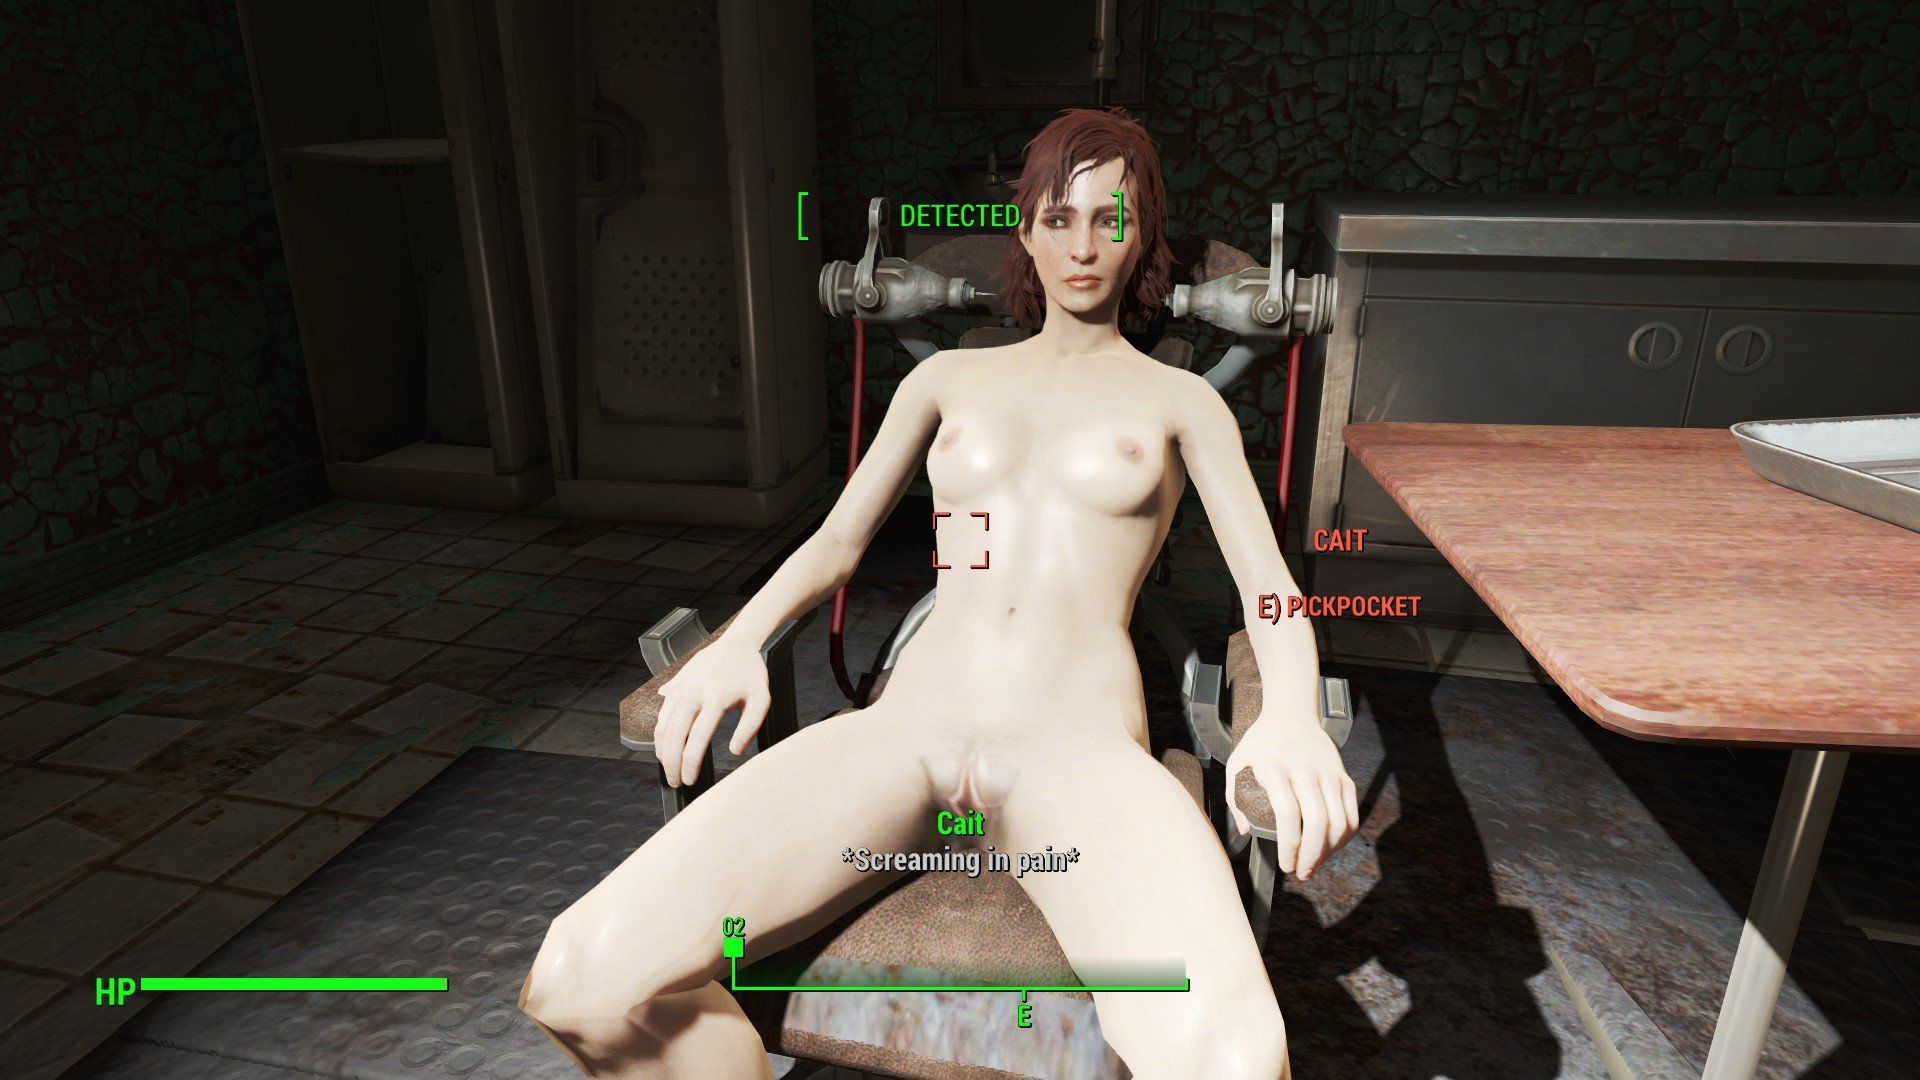 Fallout nude mod NEW porno site photos. 